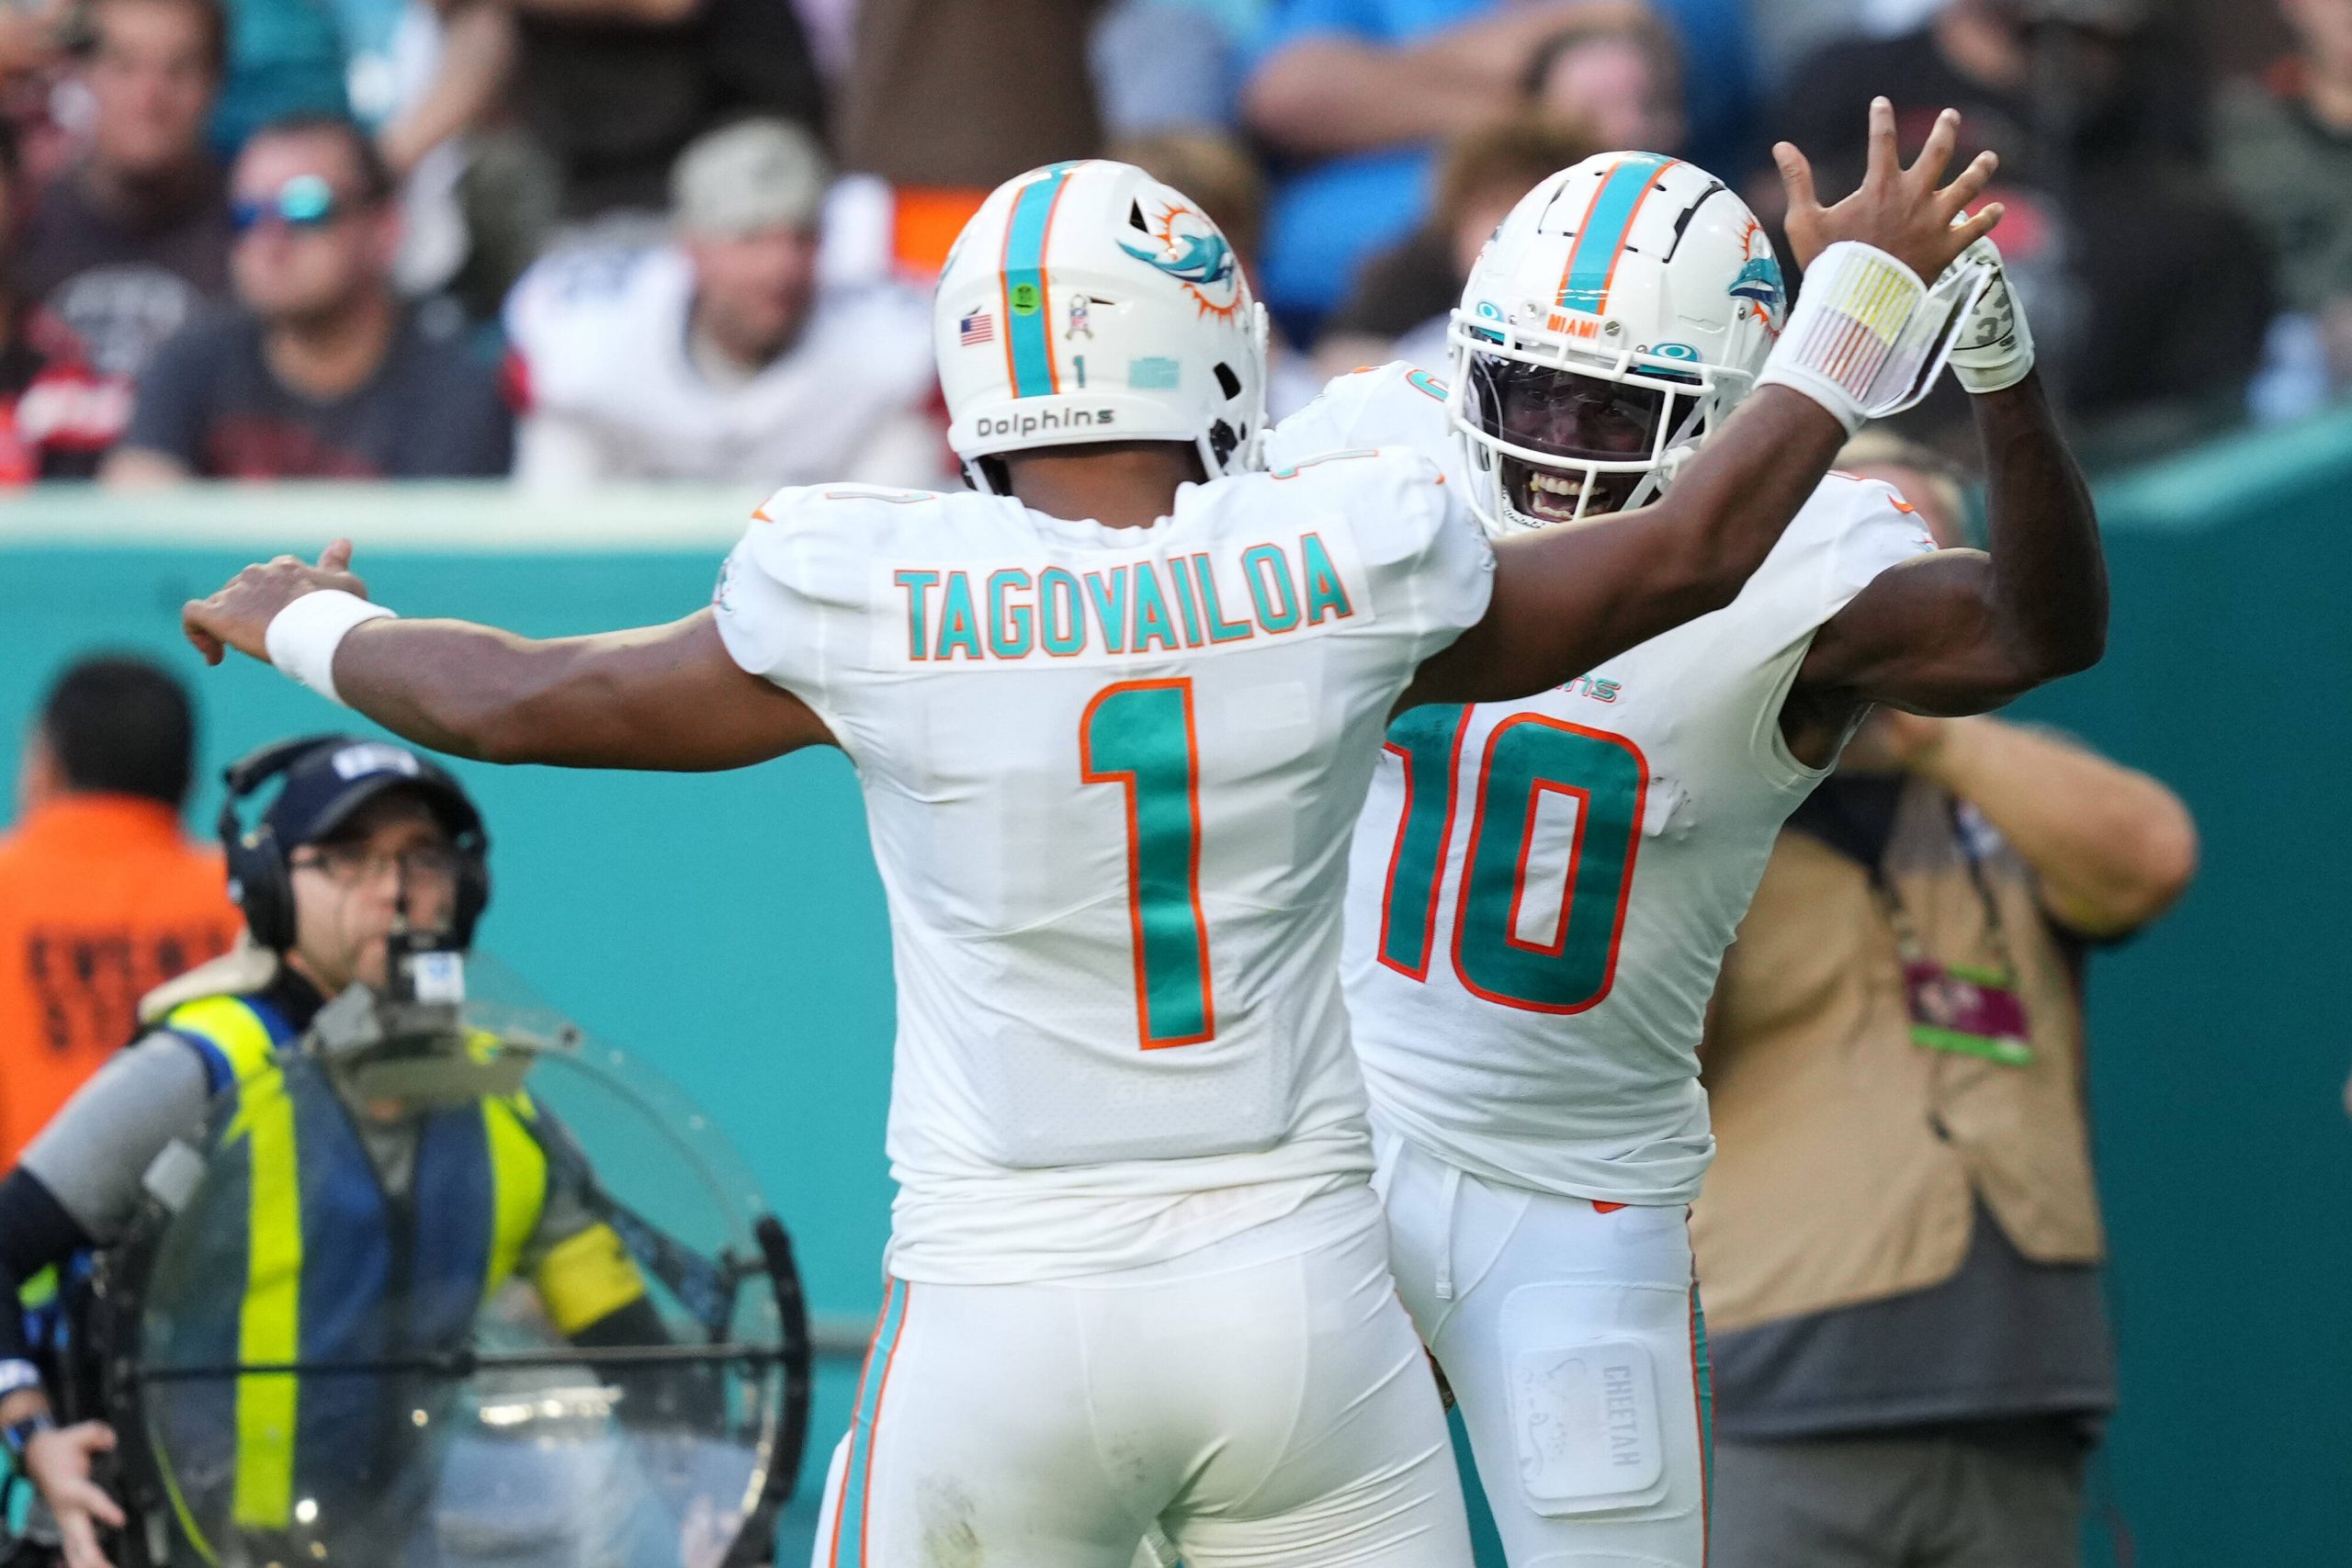 FootballR - NFL - Zwei Spieler der Miami Dolphins, Tyreek Hill und Tua Tagovailoa, feiern während eines Spiels und zeigen damit ihre tolle Zusammenarbeit.